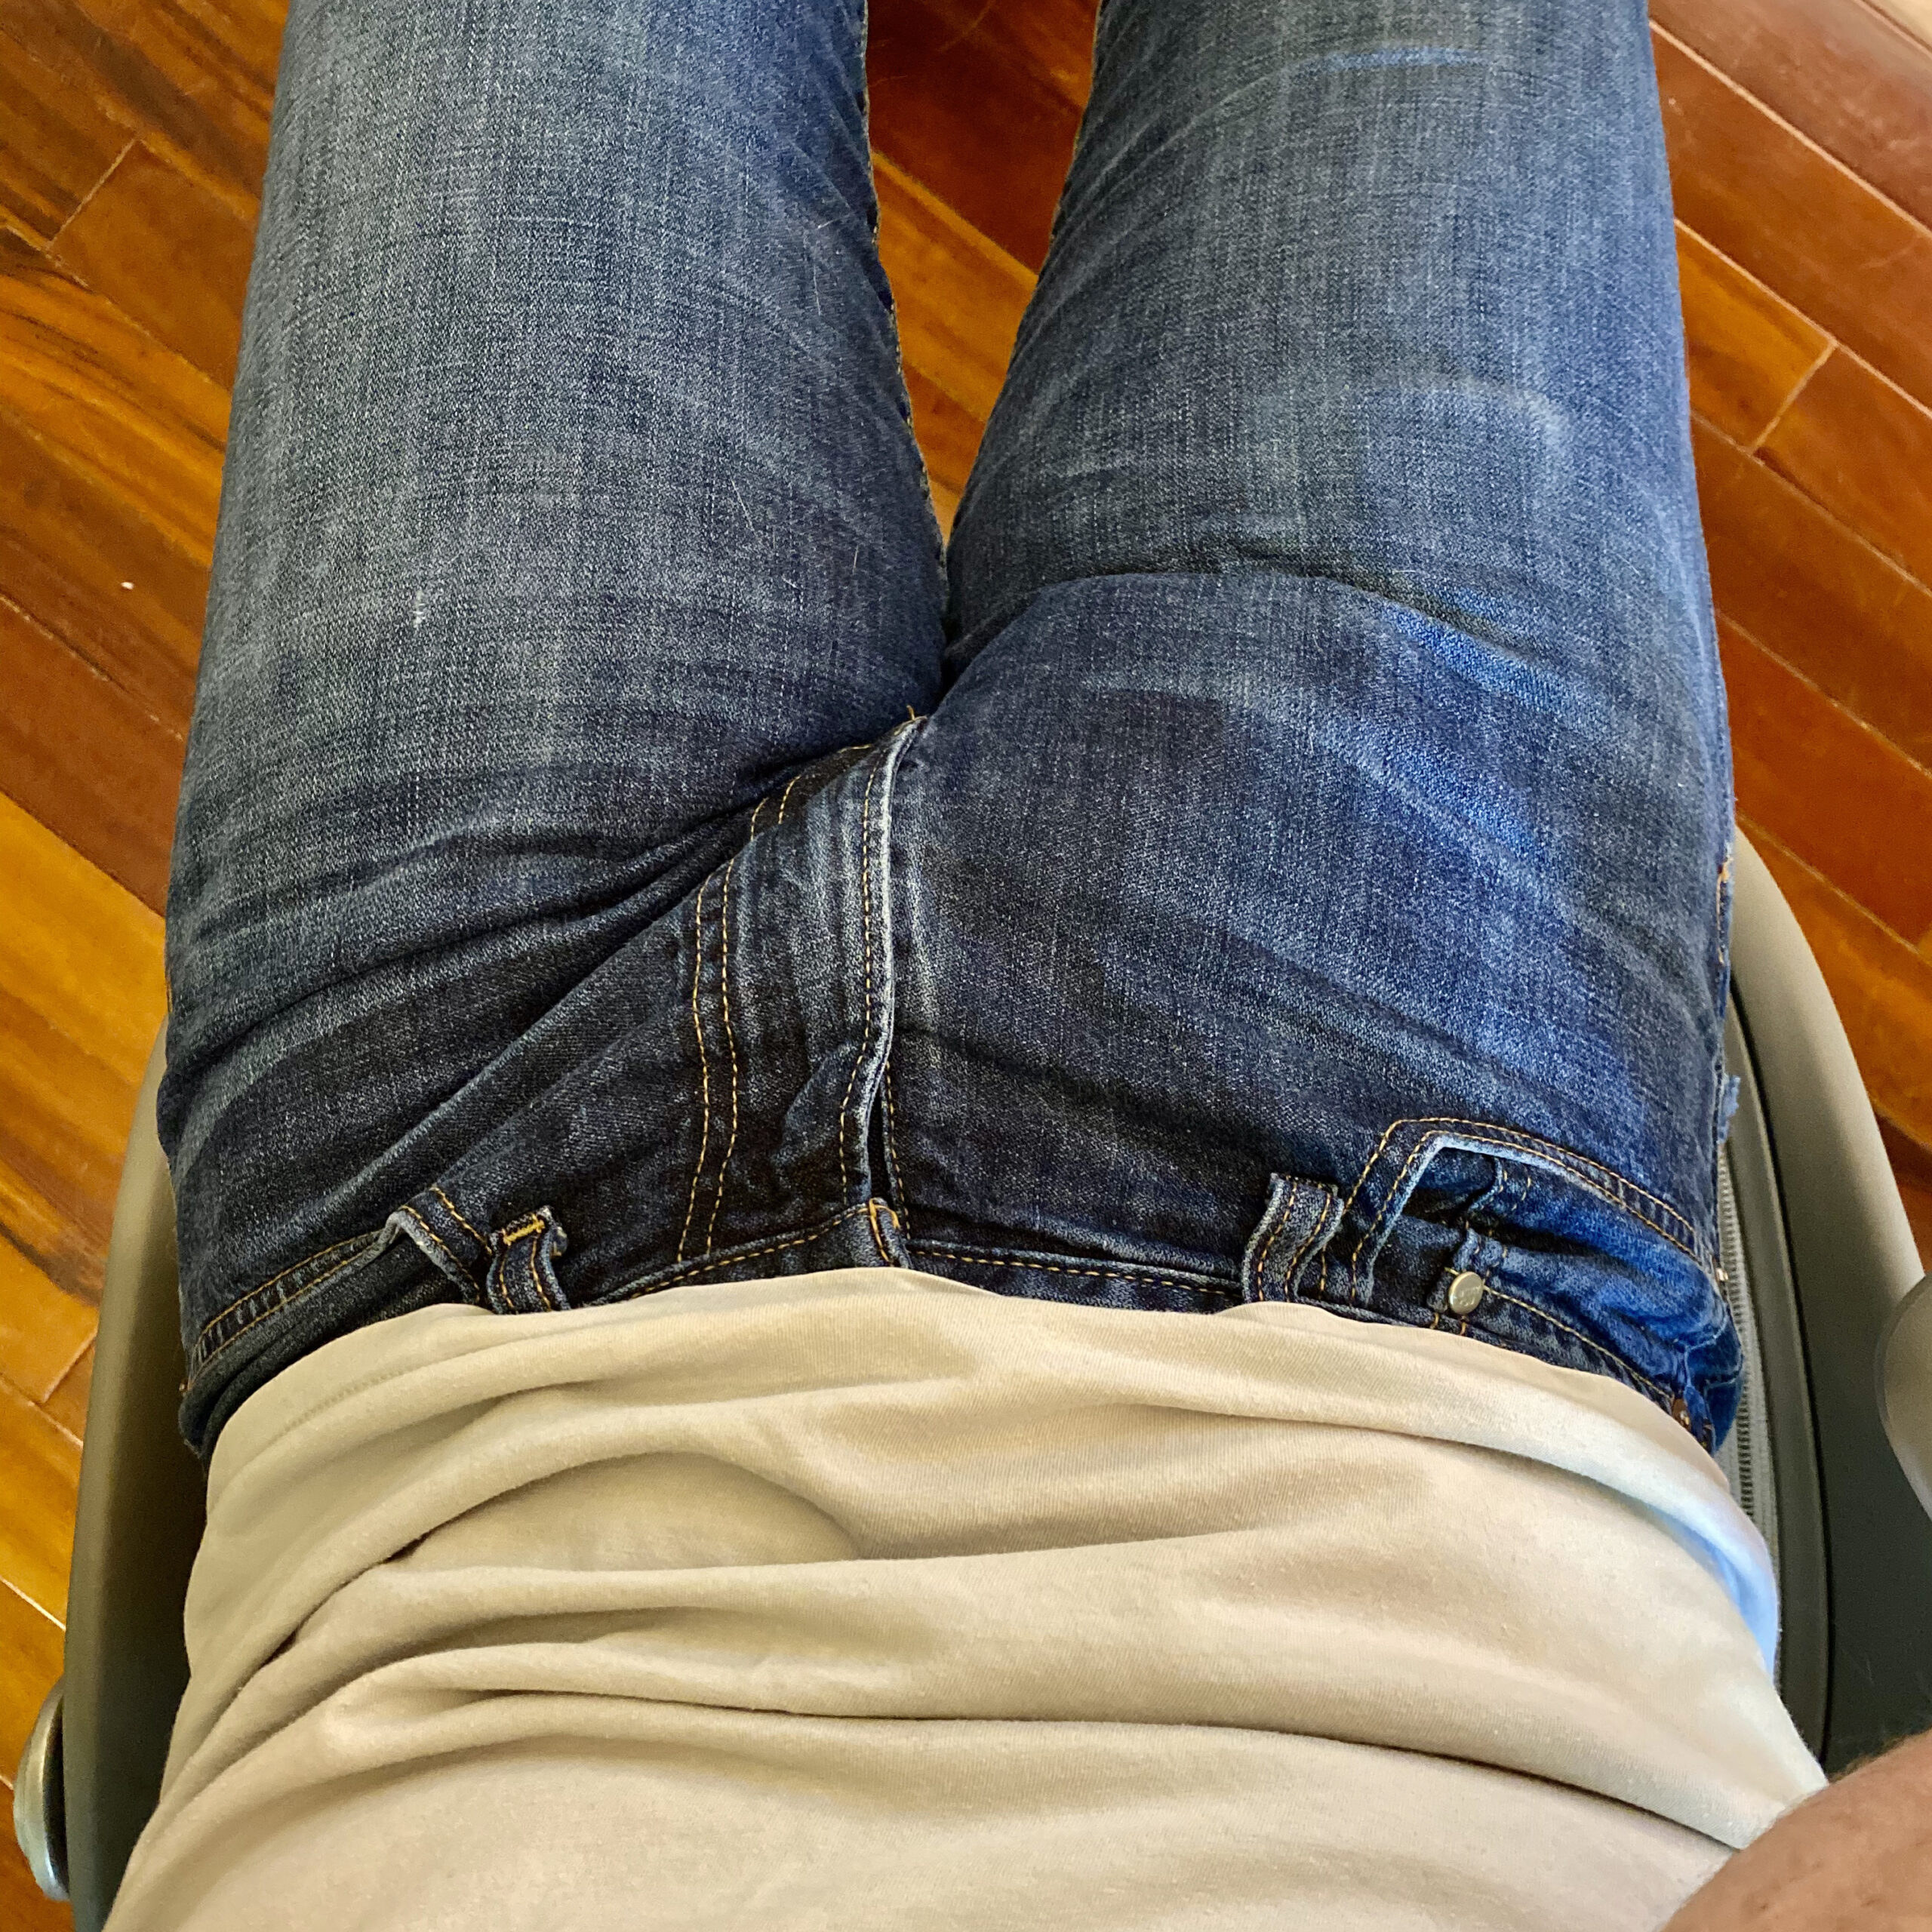 Huge jeans bulge